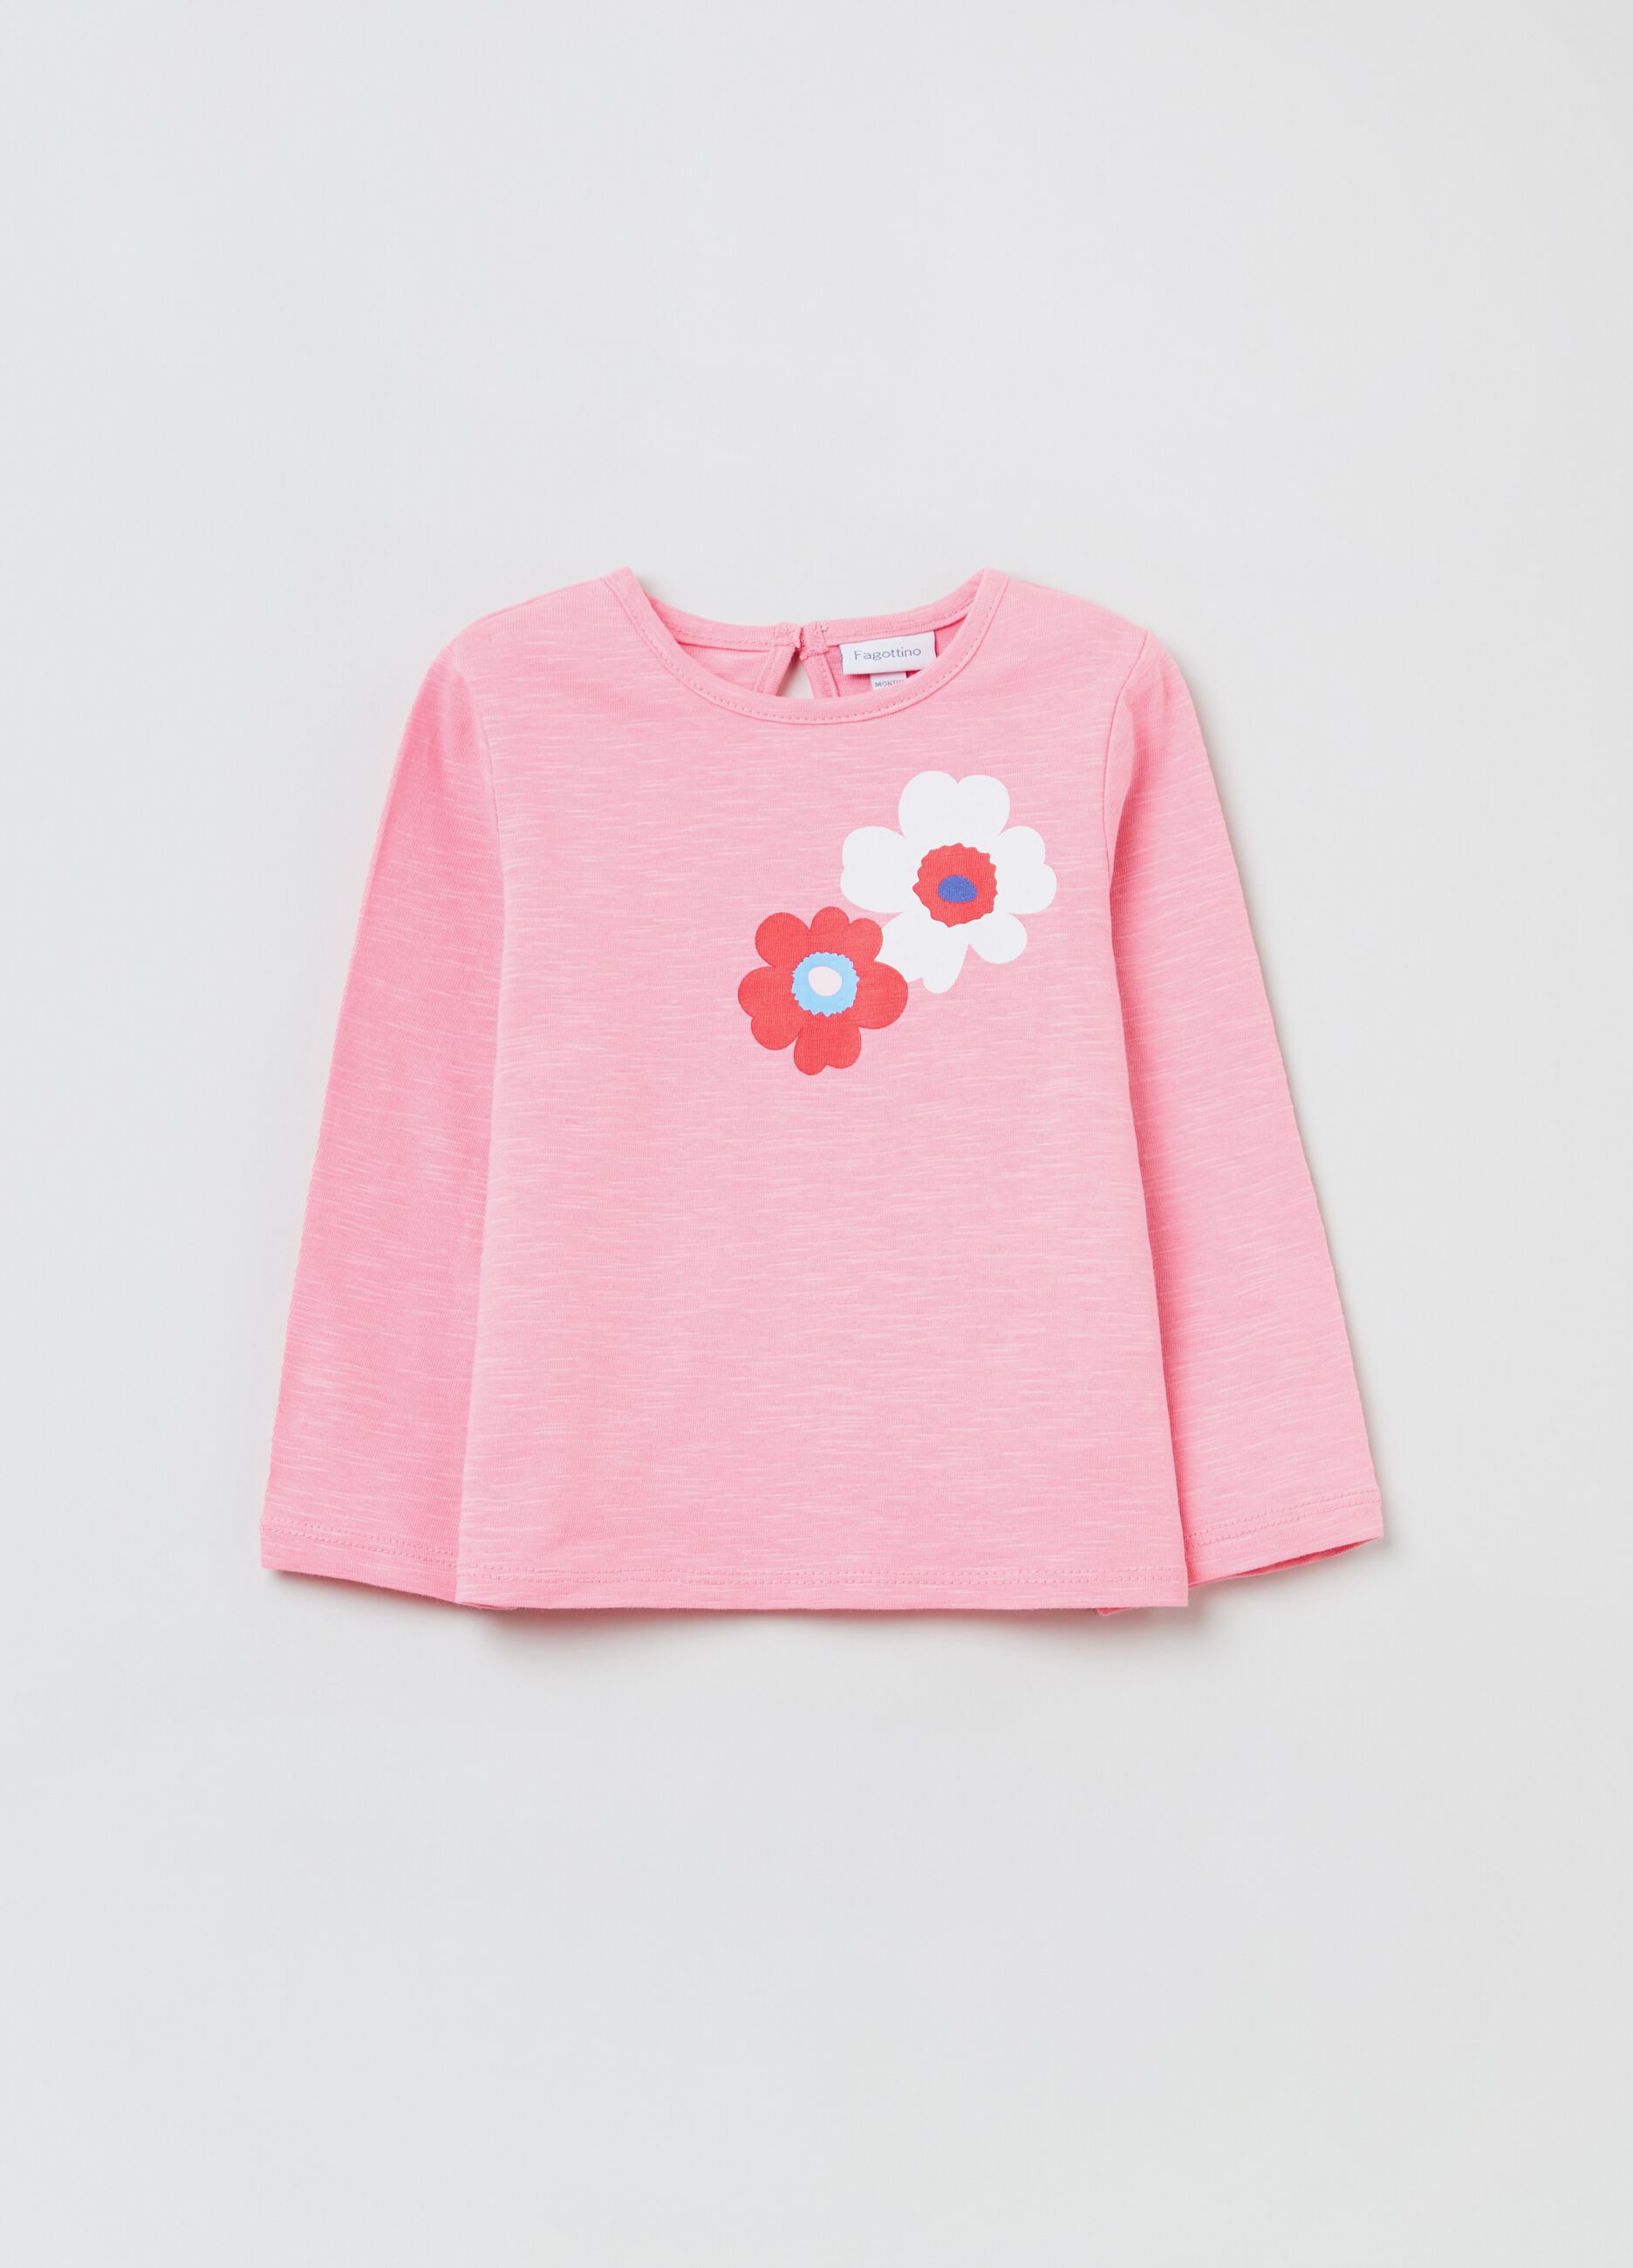 Slub cotton T-shirt with flowers print